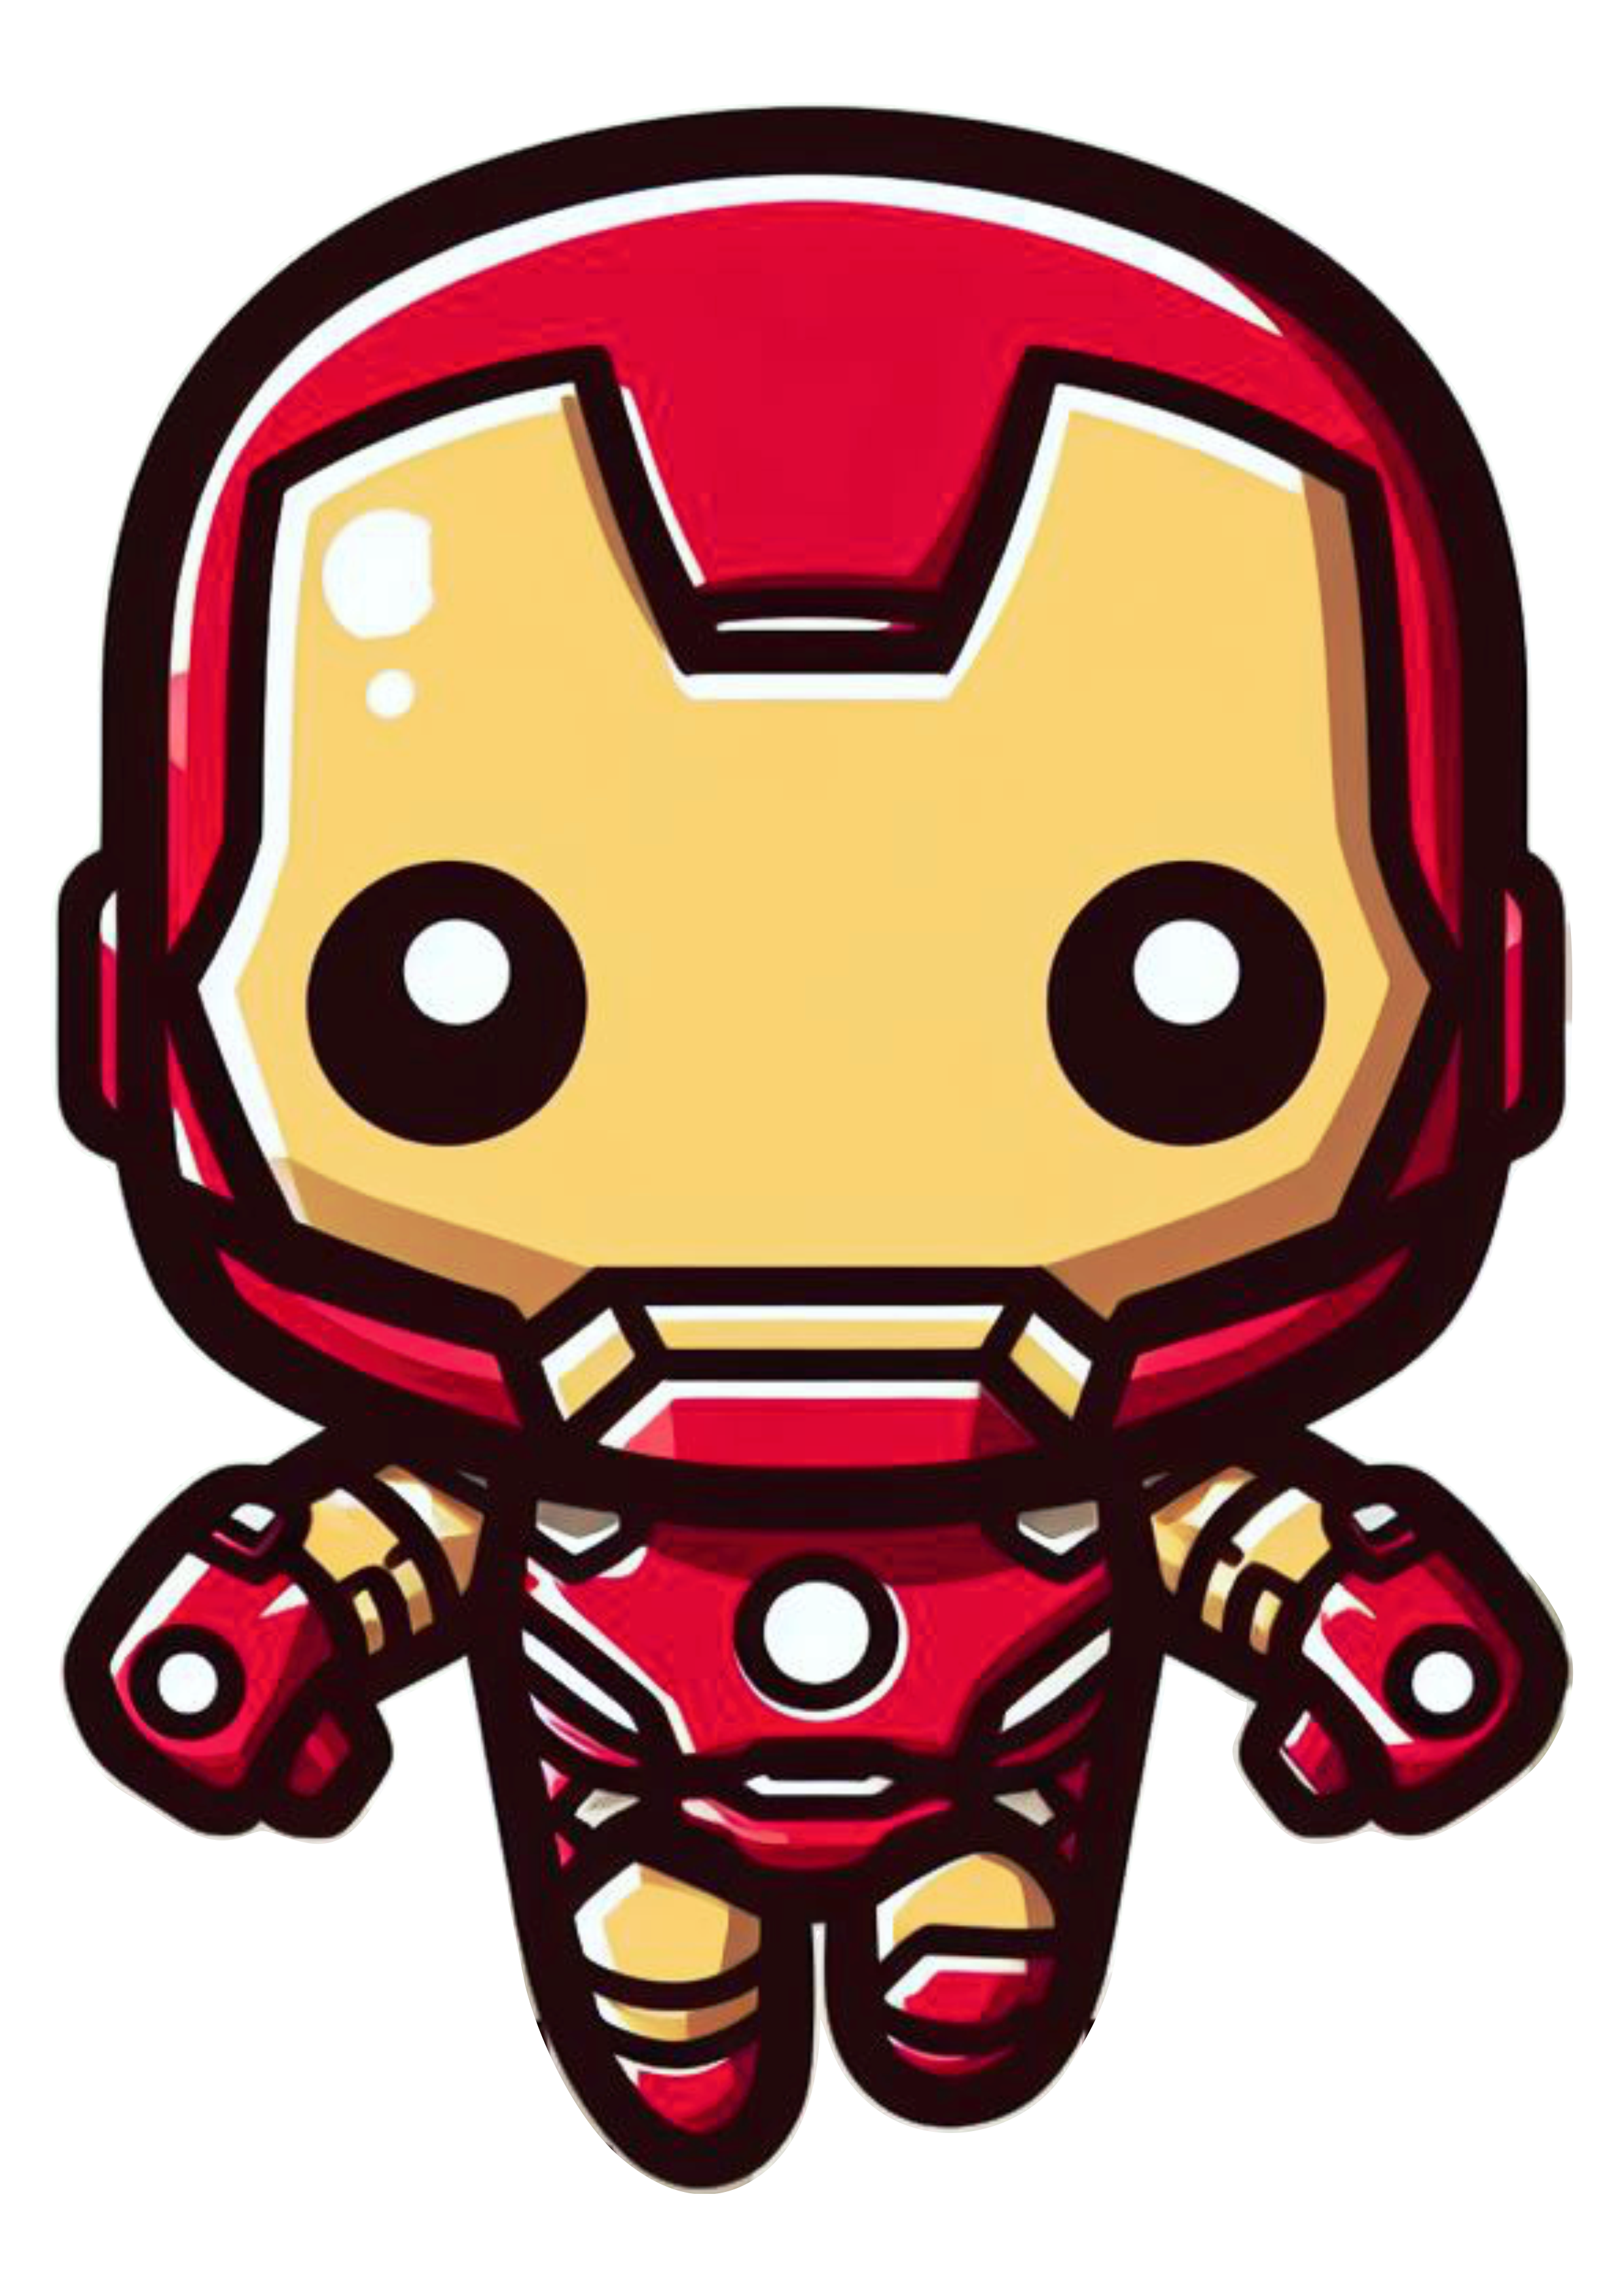 Homem de ferro bonequinho fofinho cute chibi marvel comics HQ de super herói fundo transparente Iron Man design png